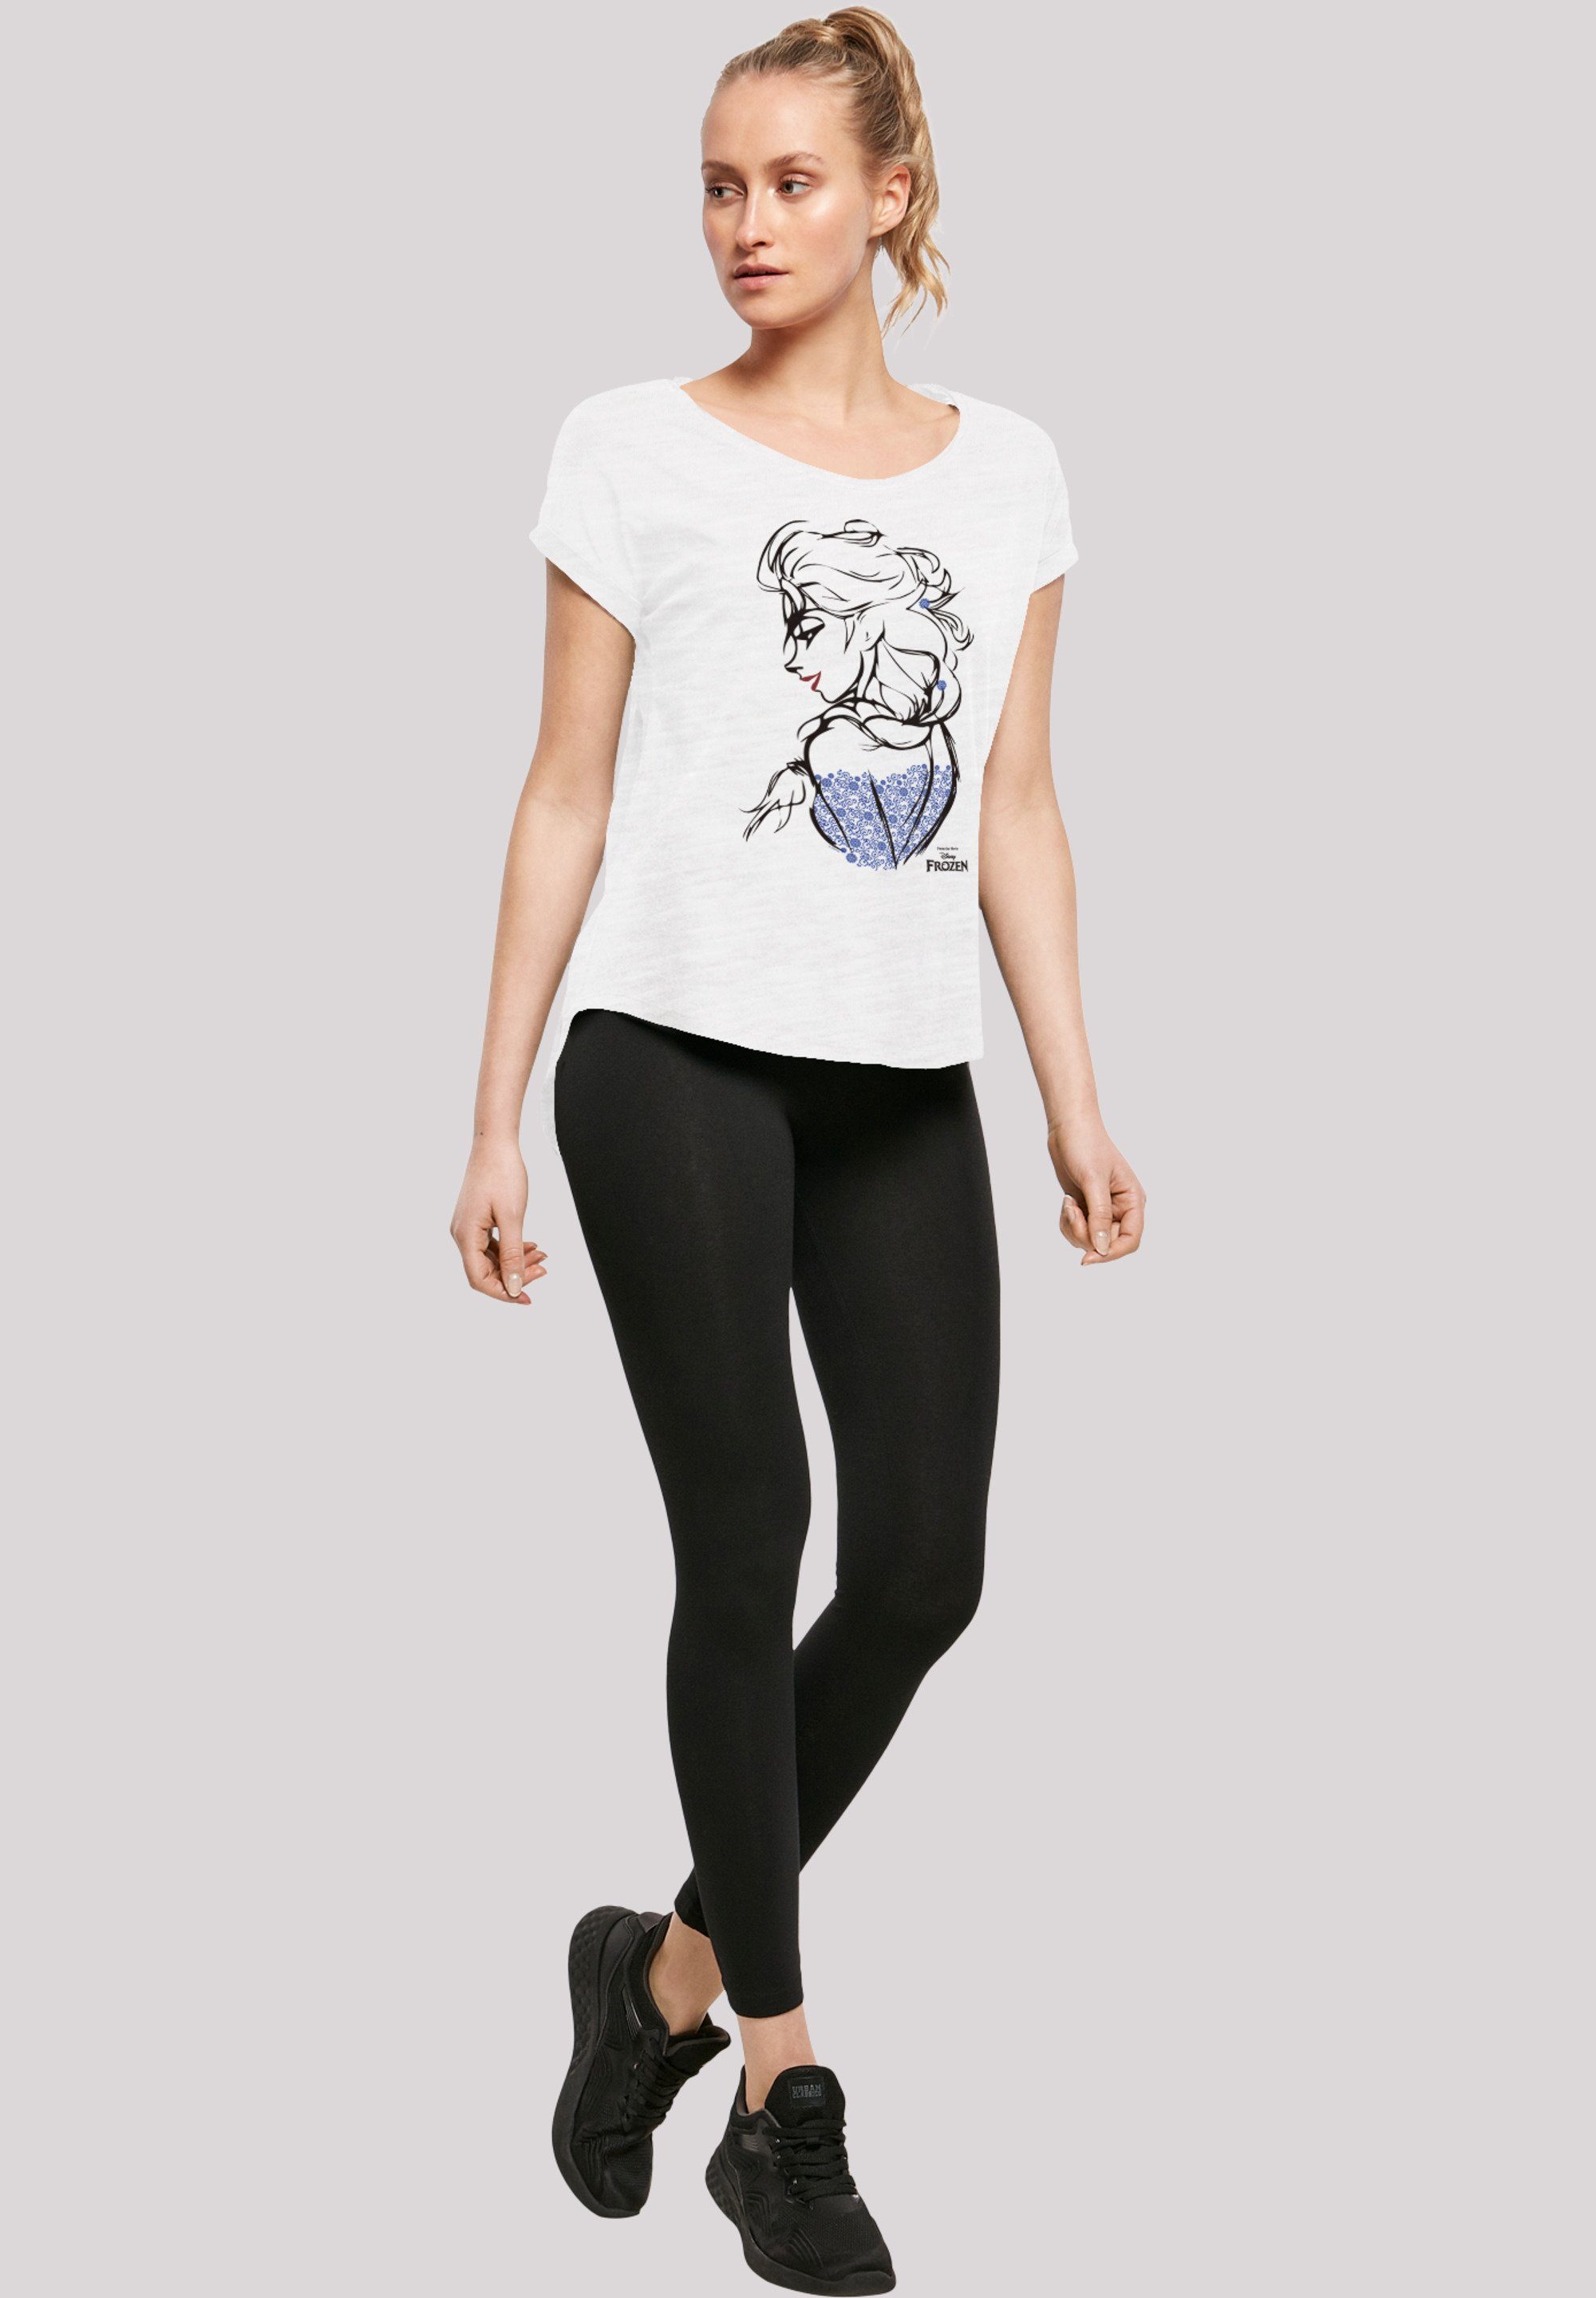 F4NT4STIC T-Shirt Frozen Print Elsa Sketch Mono